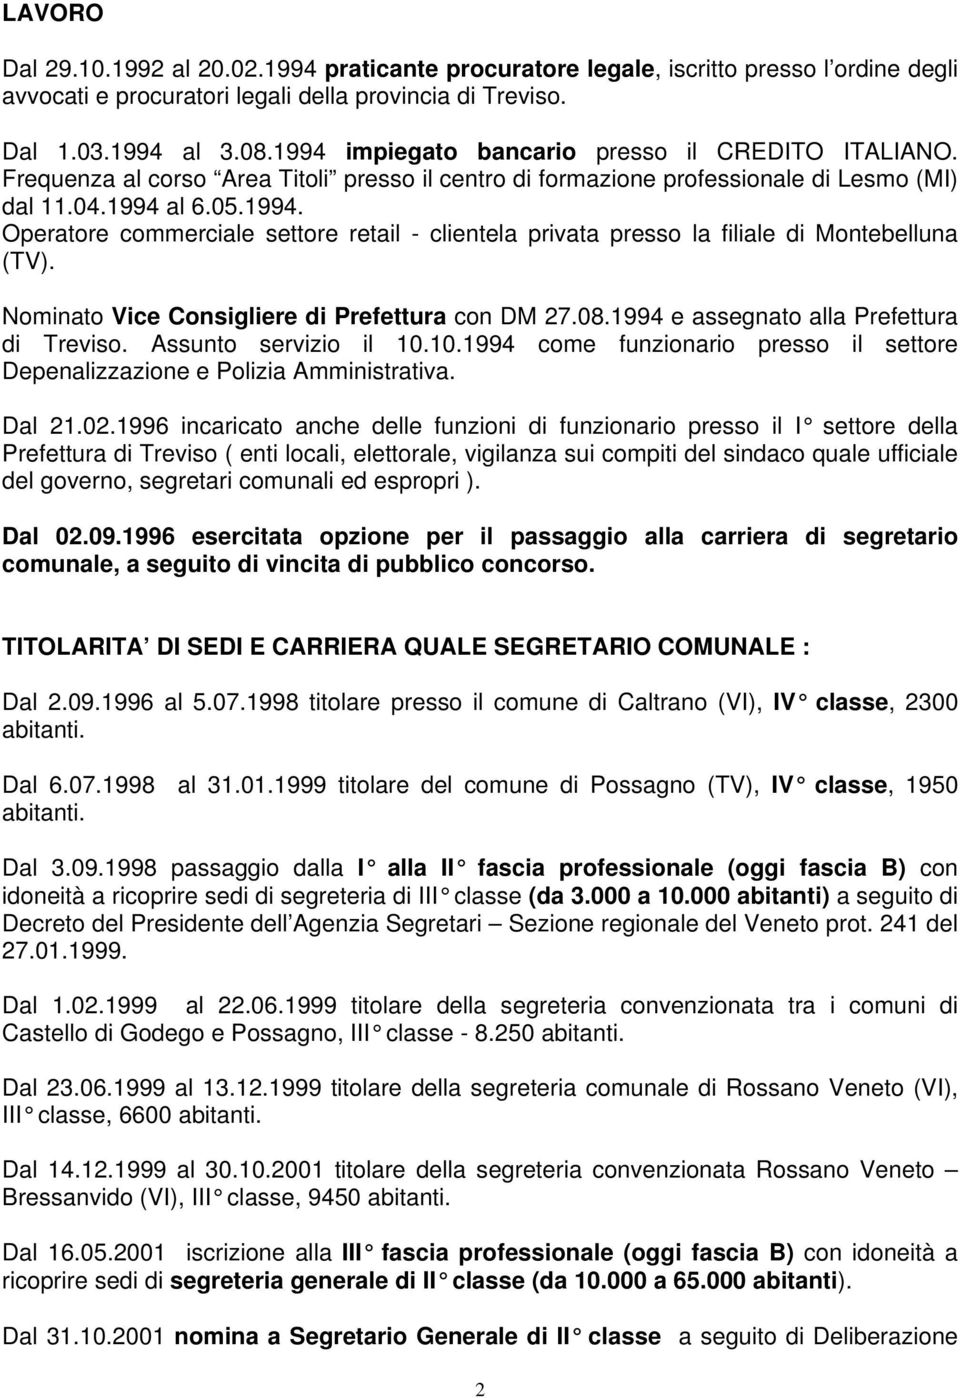 Nominato Vice Consigliere di Prefettura con DM 27.08.1994 e assegnato alla Prefettura di Treviso. Assunto servizio il 10.